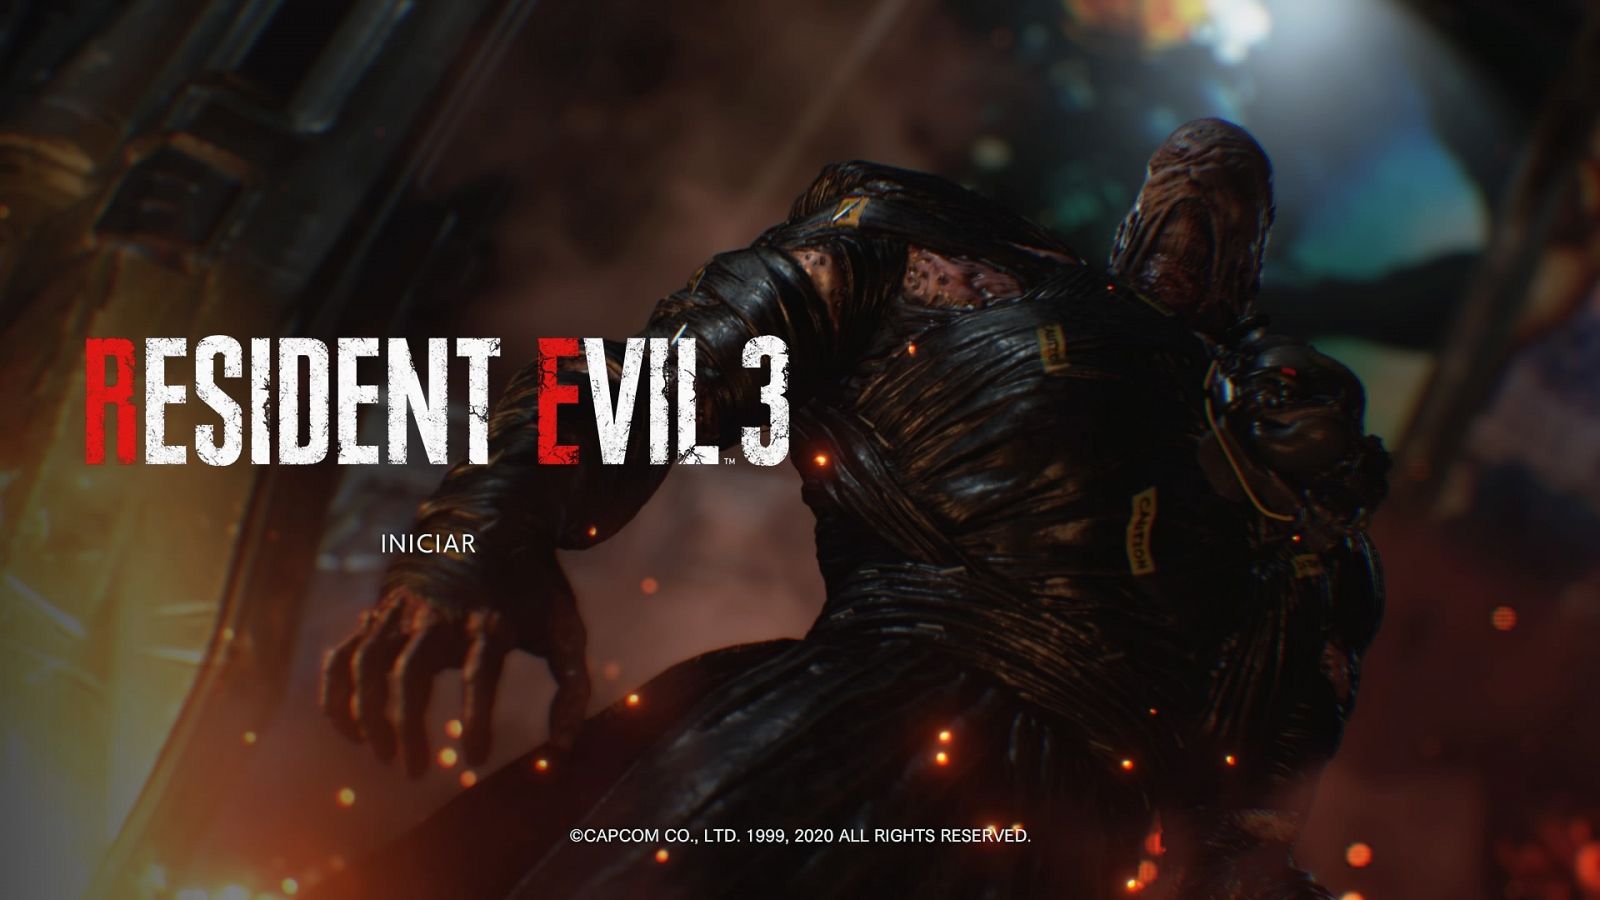 Videojuegos, Análisis: Capcom resucita 'Resident Evil 3